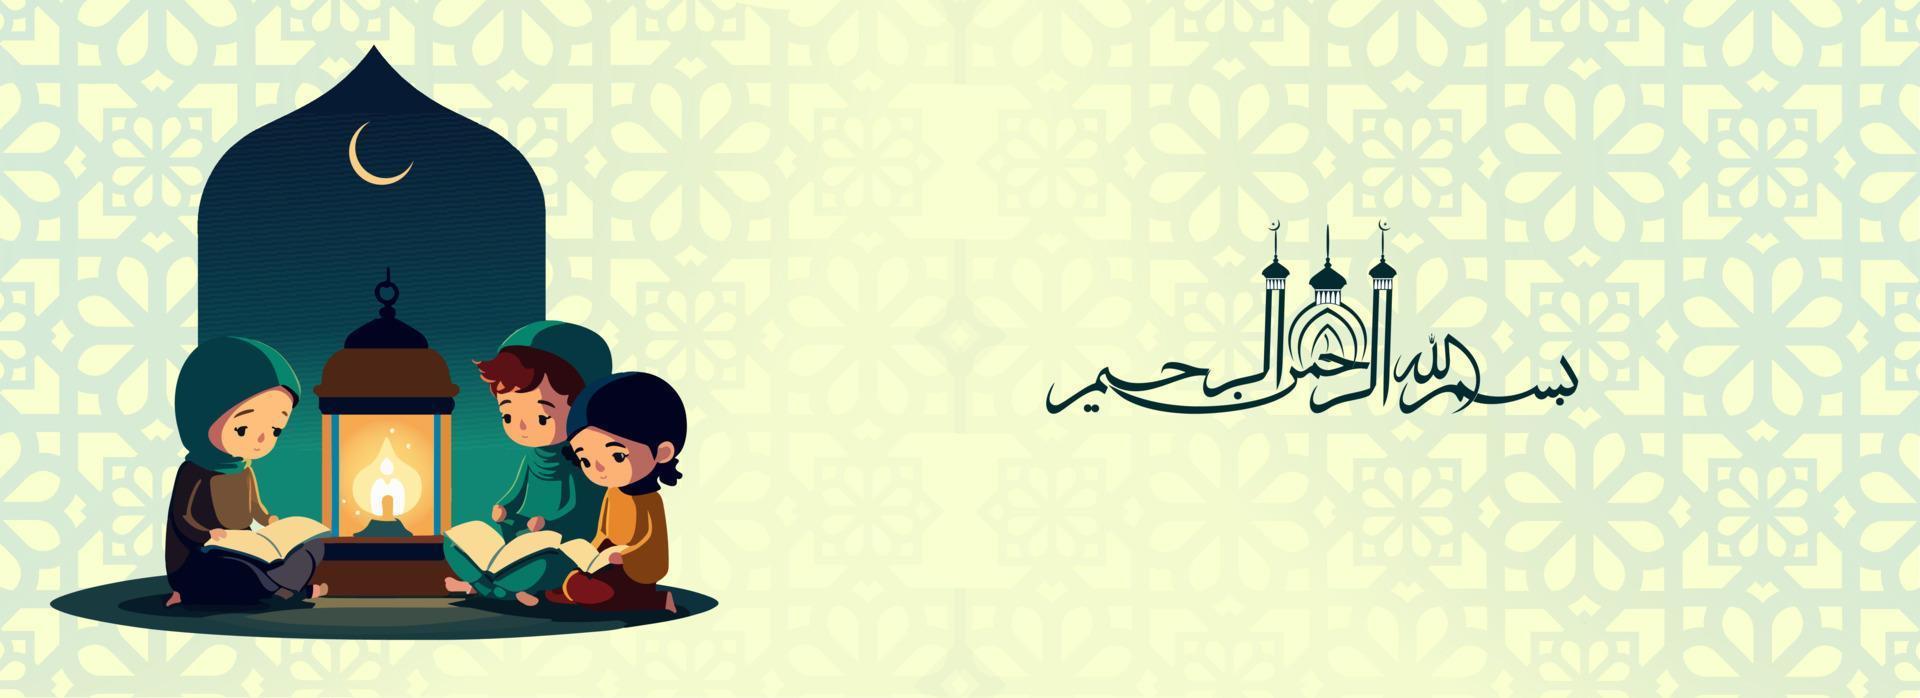 Arabisch Islamitisch schoonschrift van wensen in de naam van Allah, meest genadig, meest barmhartig en moslim kinderen lezing koran boek samen, verlichte Arabisch lamp in nacht. vector